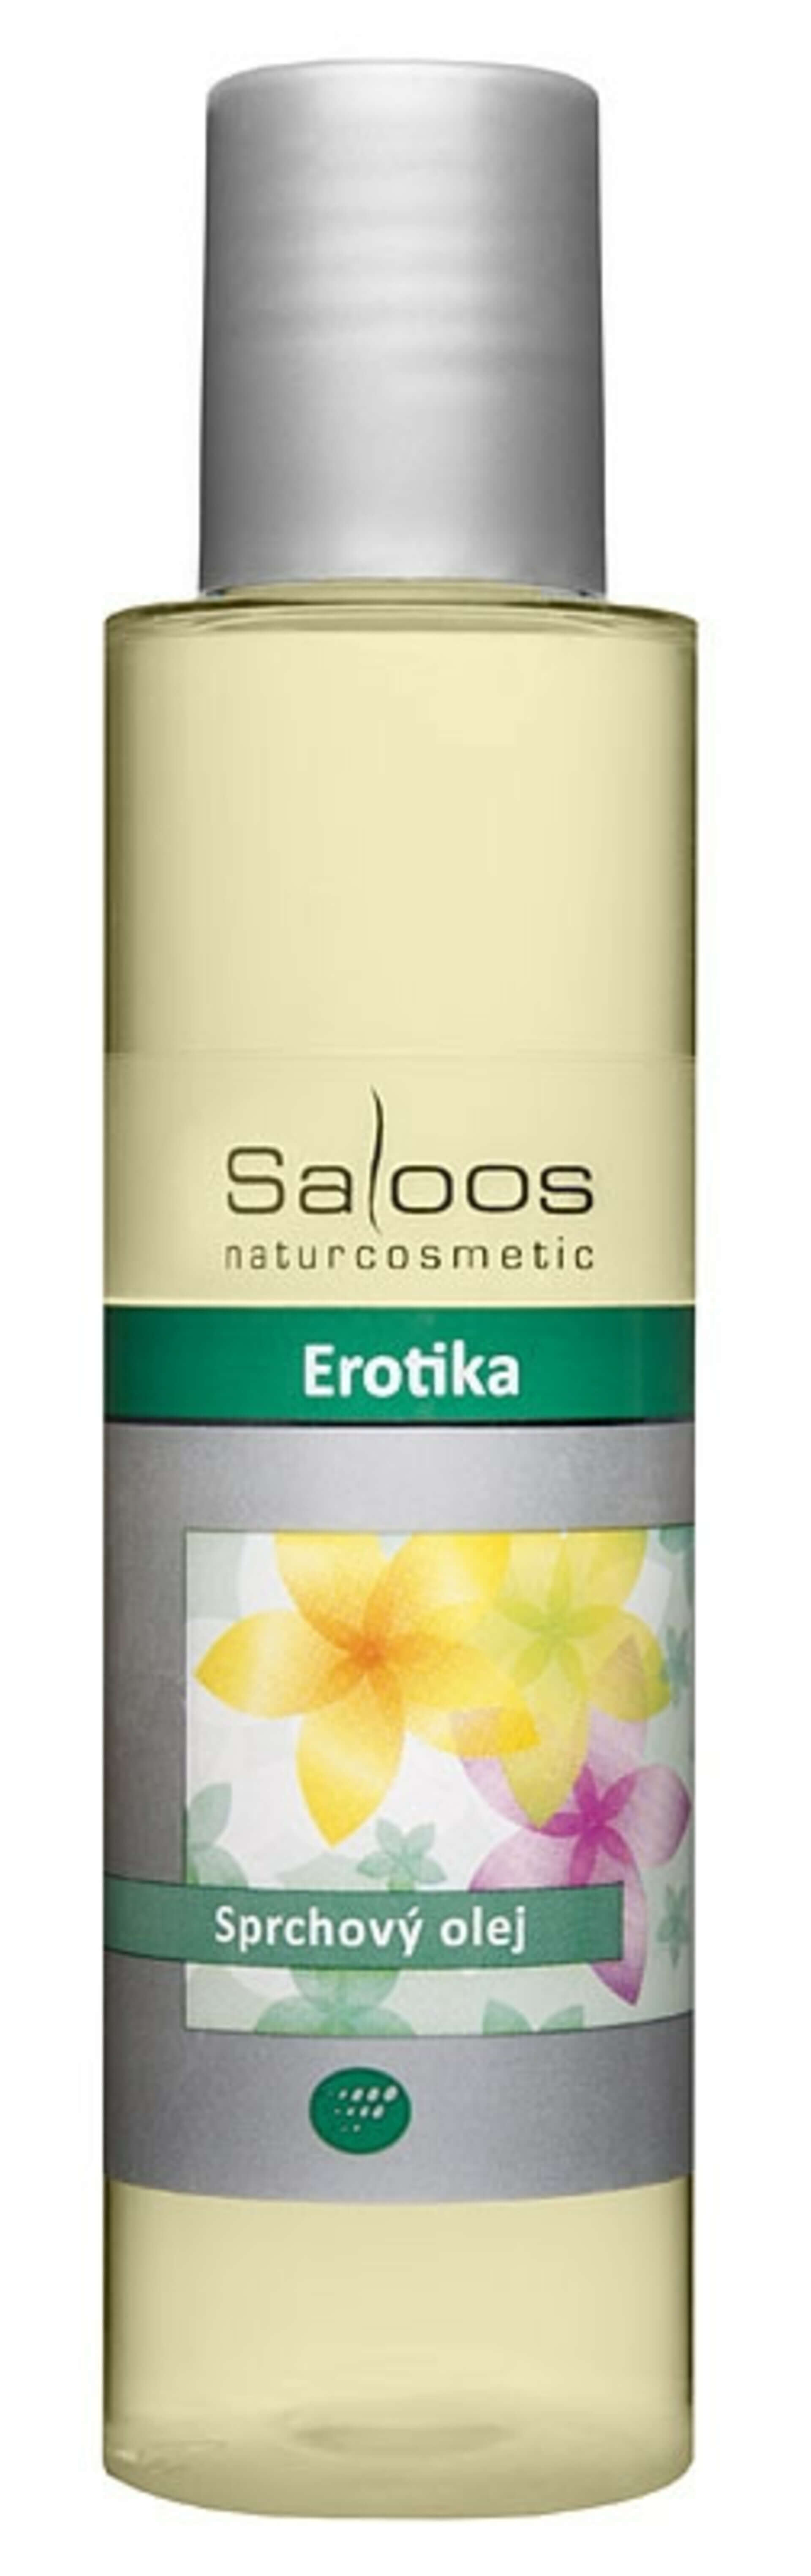 Saloos sprchový olej Erotika 125 ml